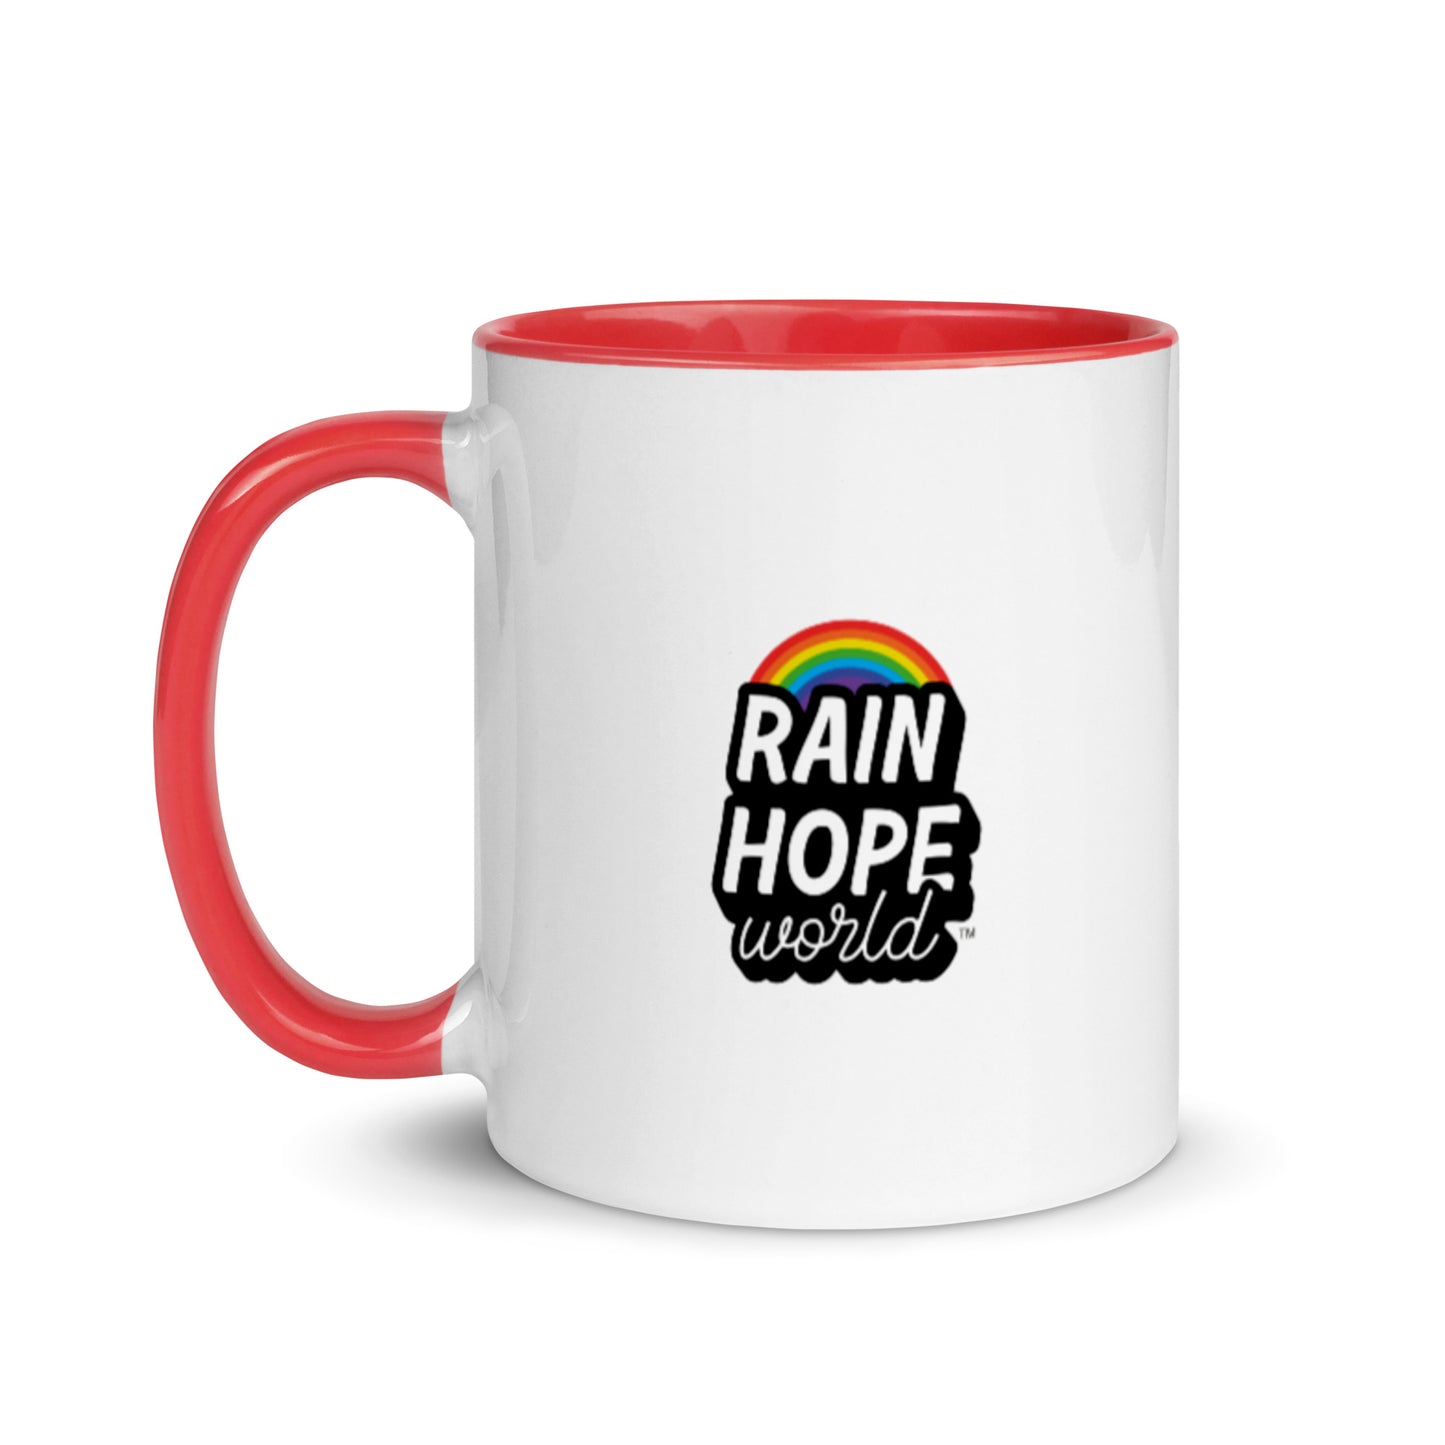 Rain Hope World Mug with Color Inside